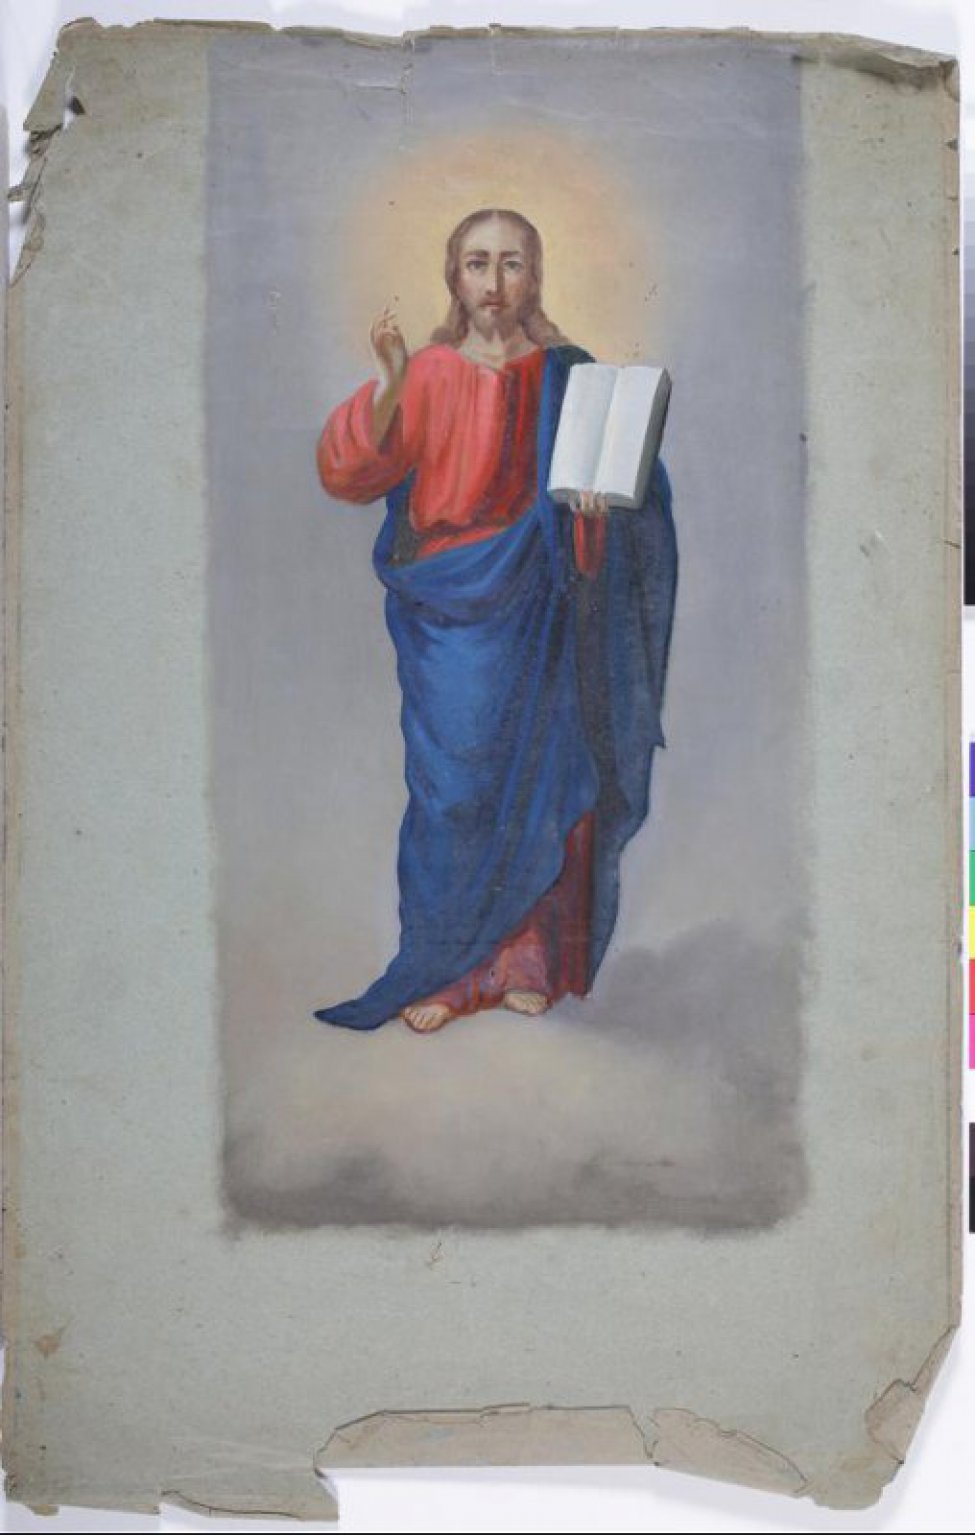 Христос изображен в рост. Благословляет правой рукой, в левой - евангелие. Изображен в синем плаще, в красной одежде.